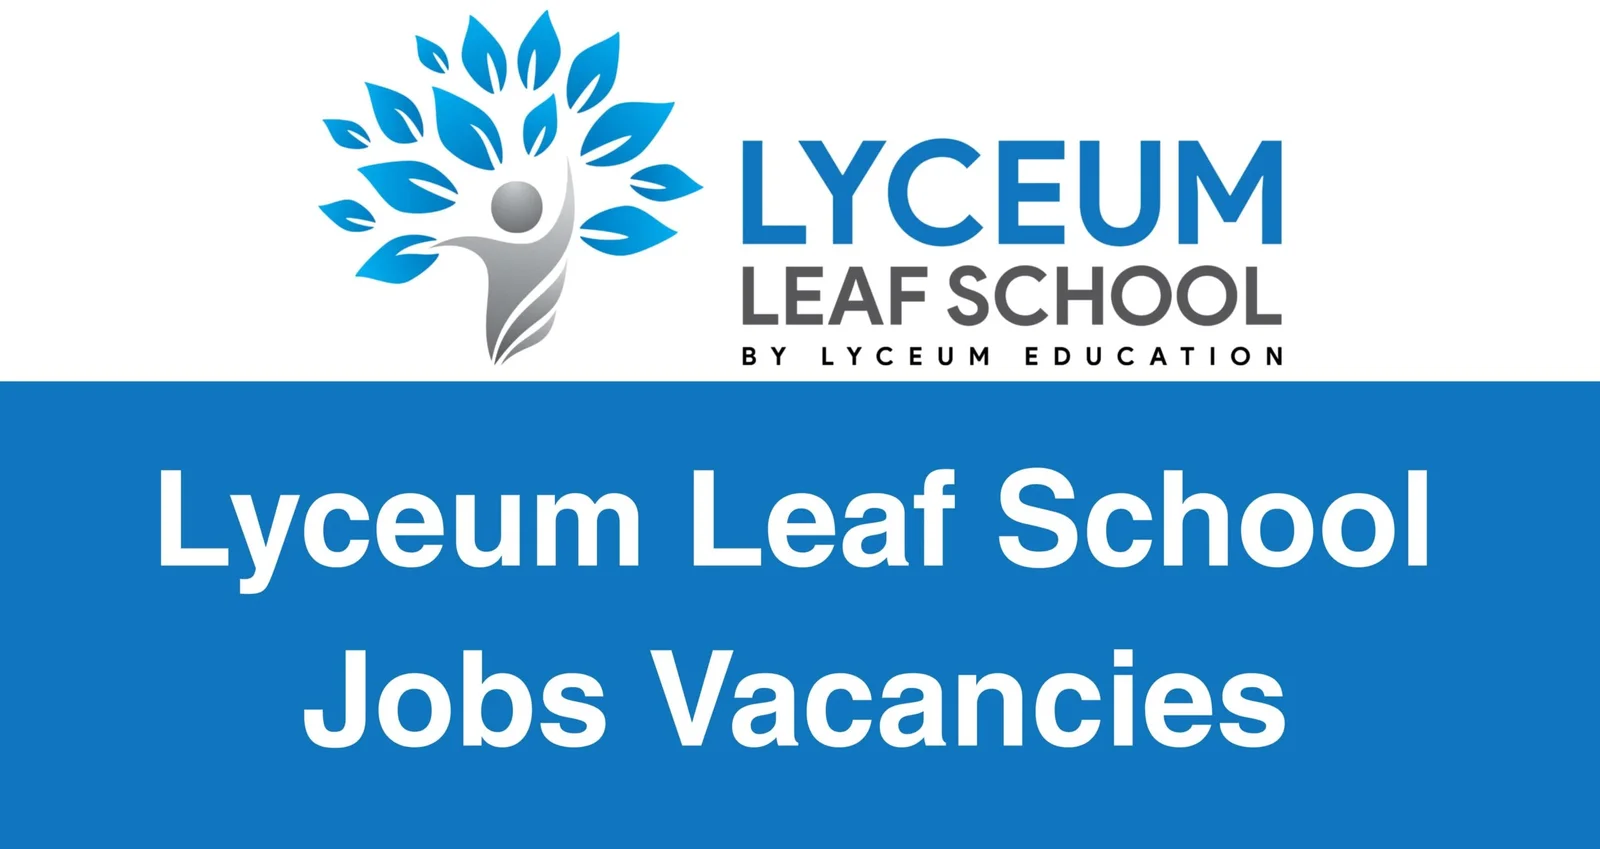 Lyceum Leaf School Jobs Vacancies